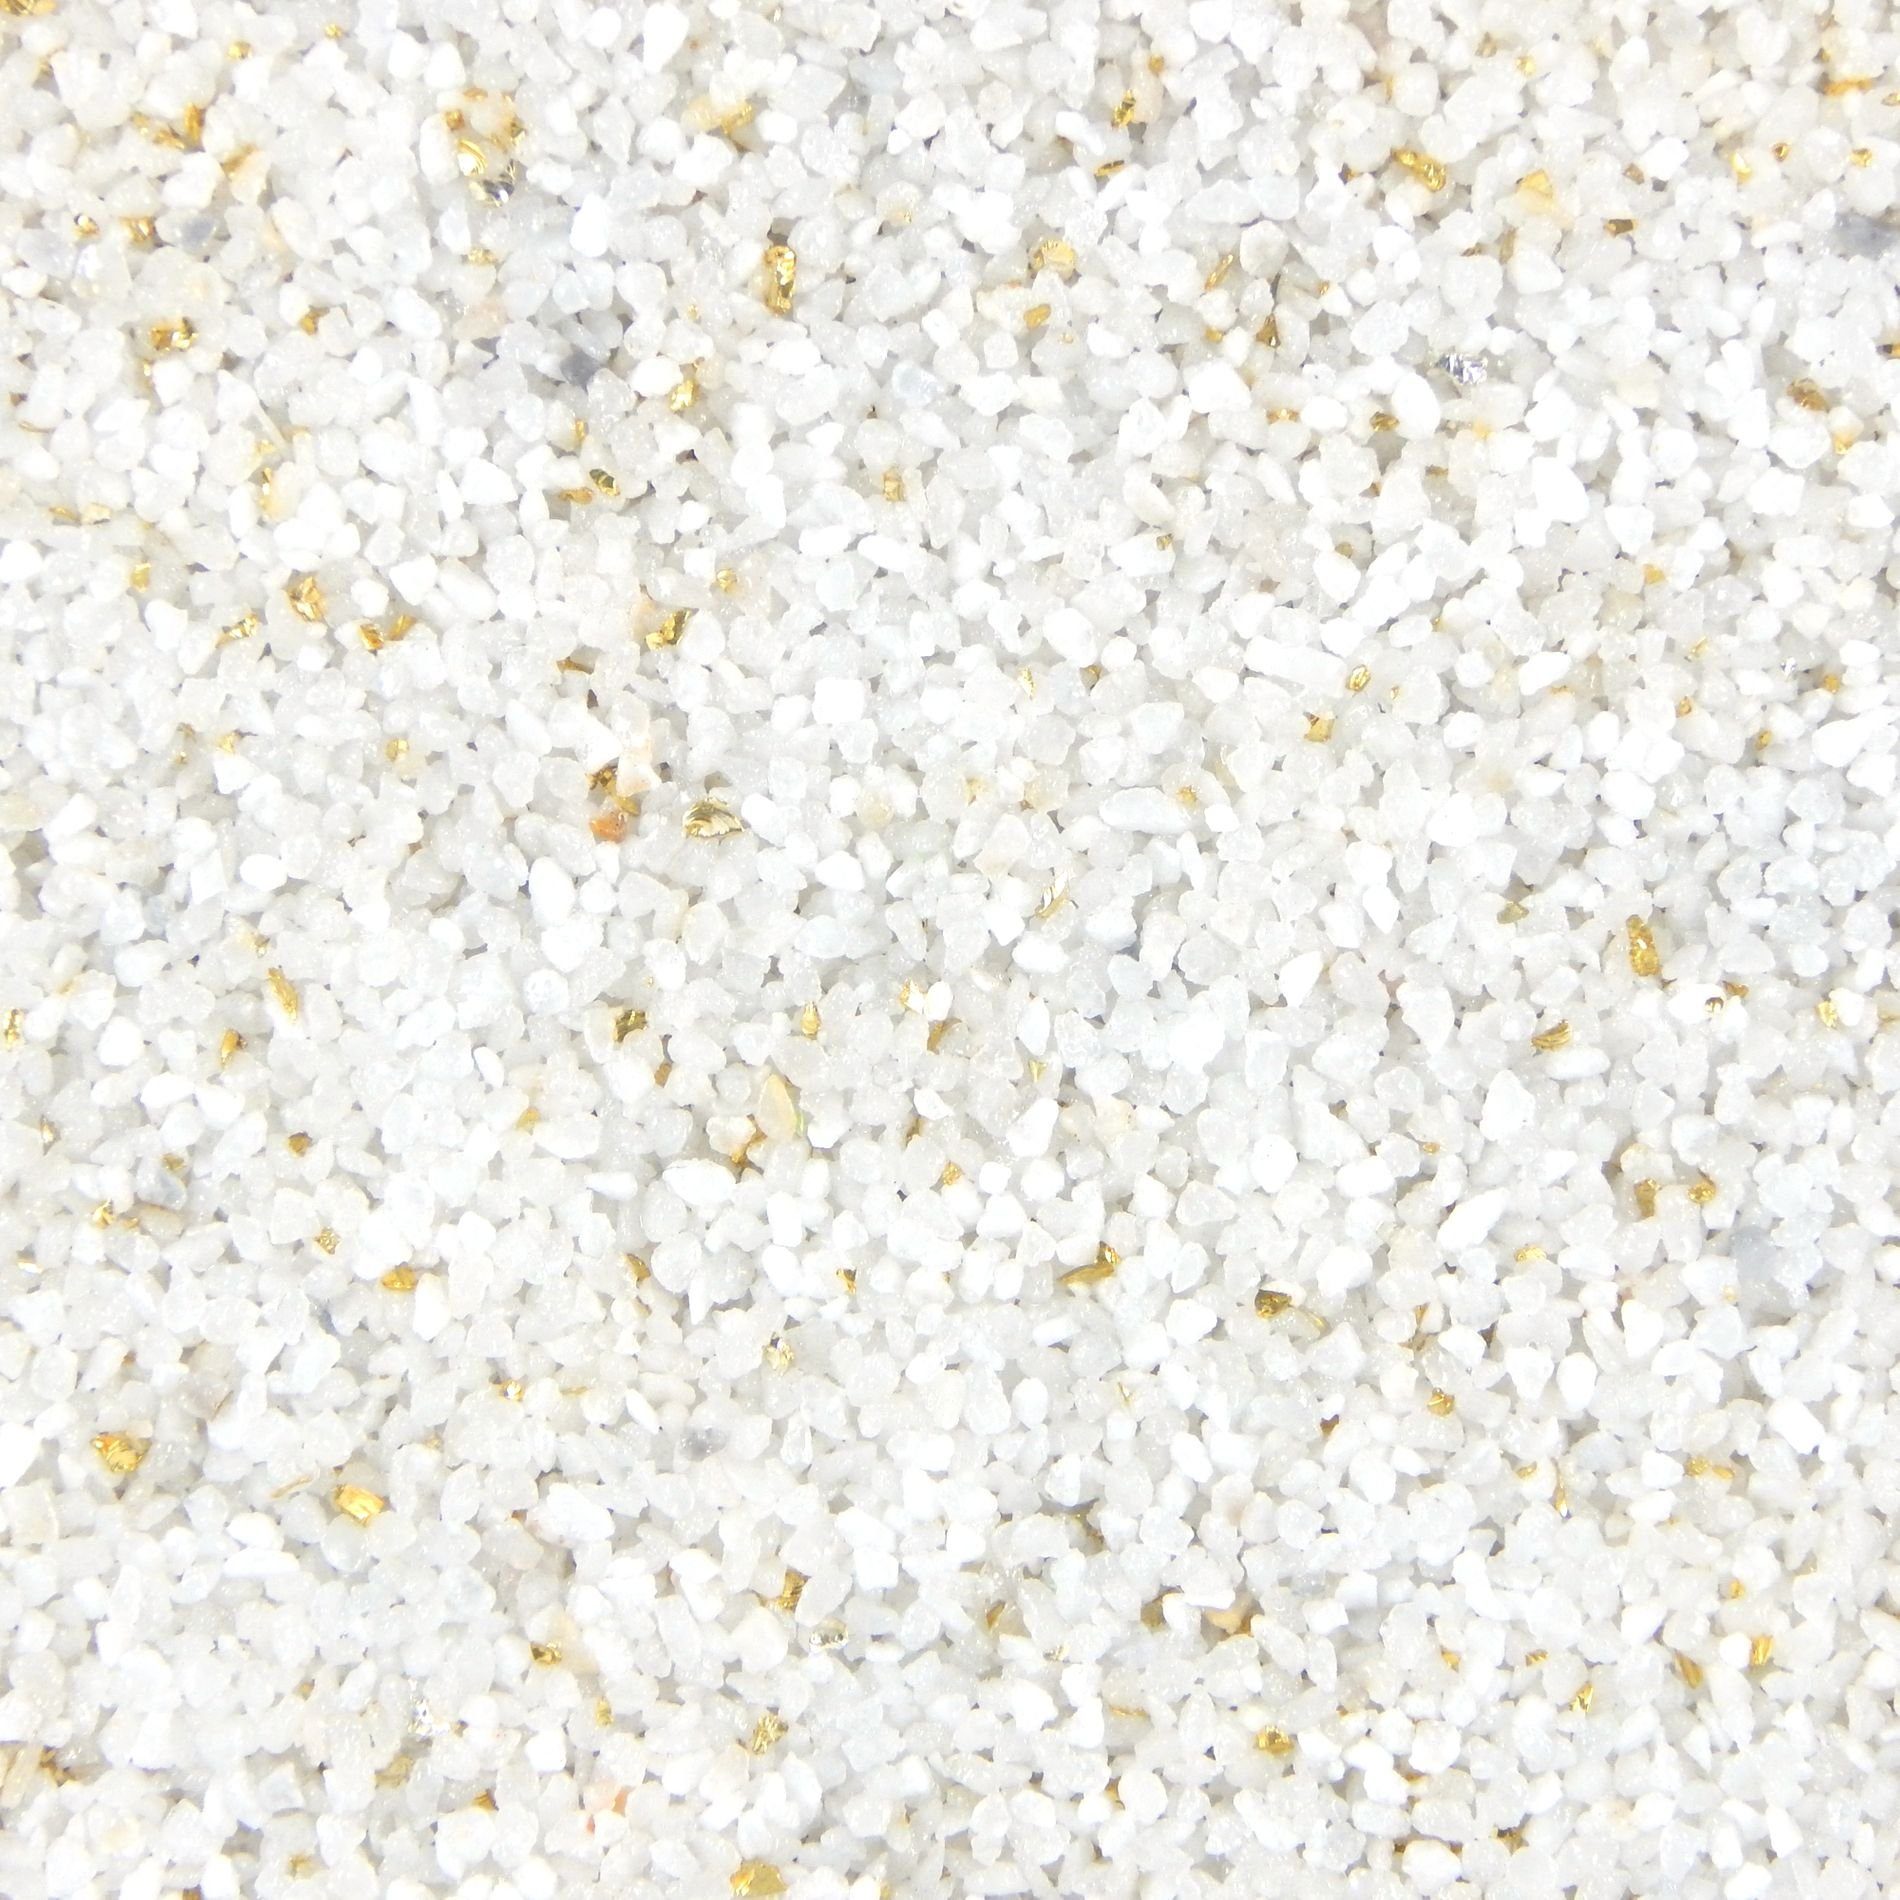 Terralith® Kunstharzputz Buntsteinputz Mosaikputz 2mm -15 kg- T123 (Eimer, Verarbeitungsfertig) Dekorationsputz aus Marmor-Granulat bzw. eingefärbter Körnung mit einem Reinacrylat als Bindemittel